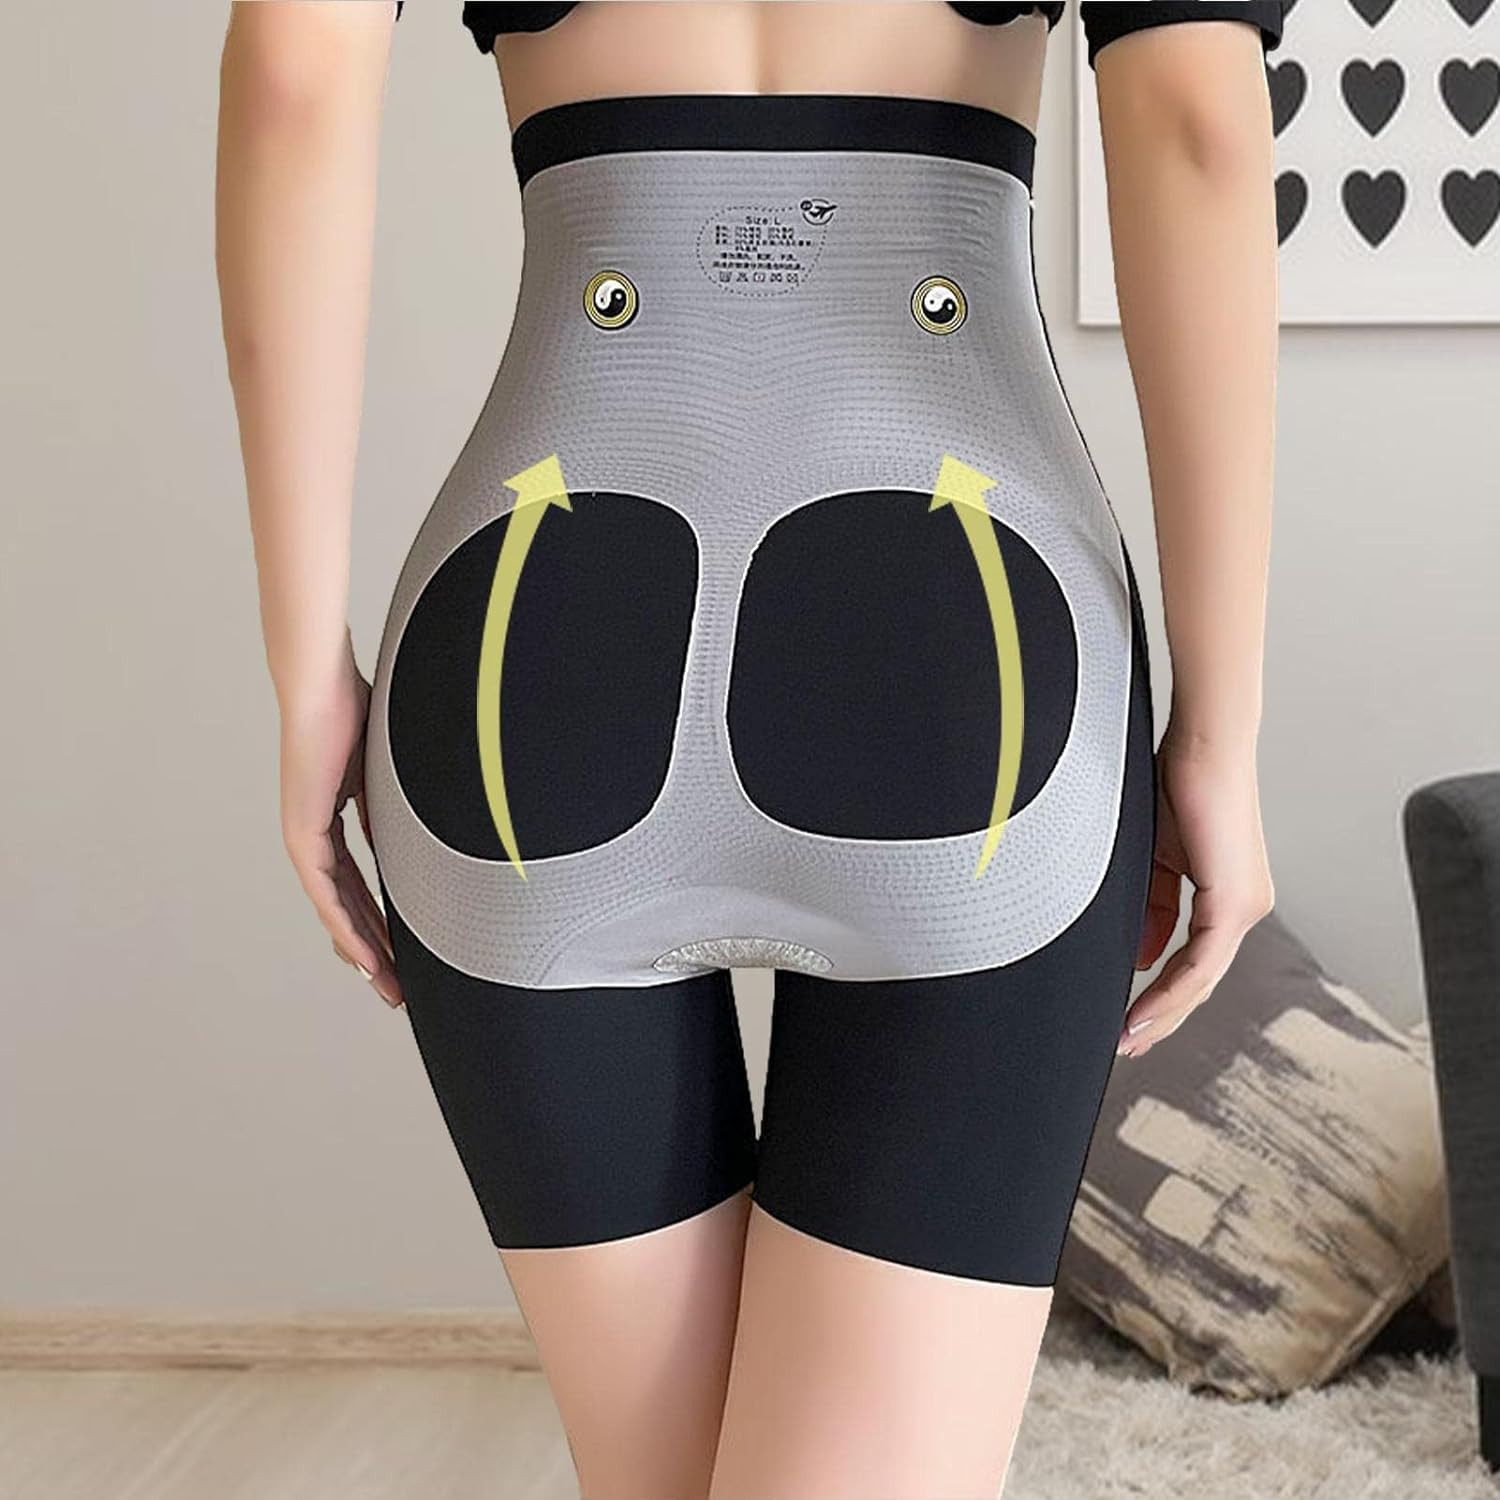 HSR Shapewear for Women Tummy Control Shorts High Waist Panty Mid Thigh  Body Shaper (XL, Black)